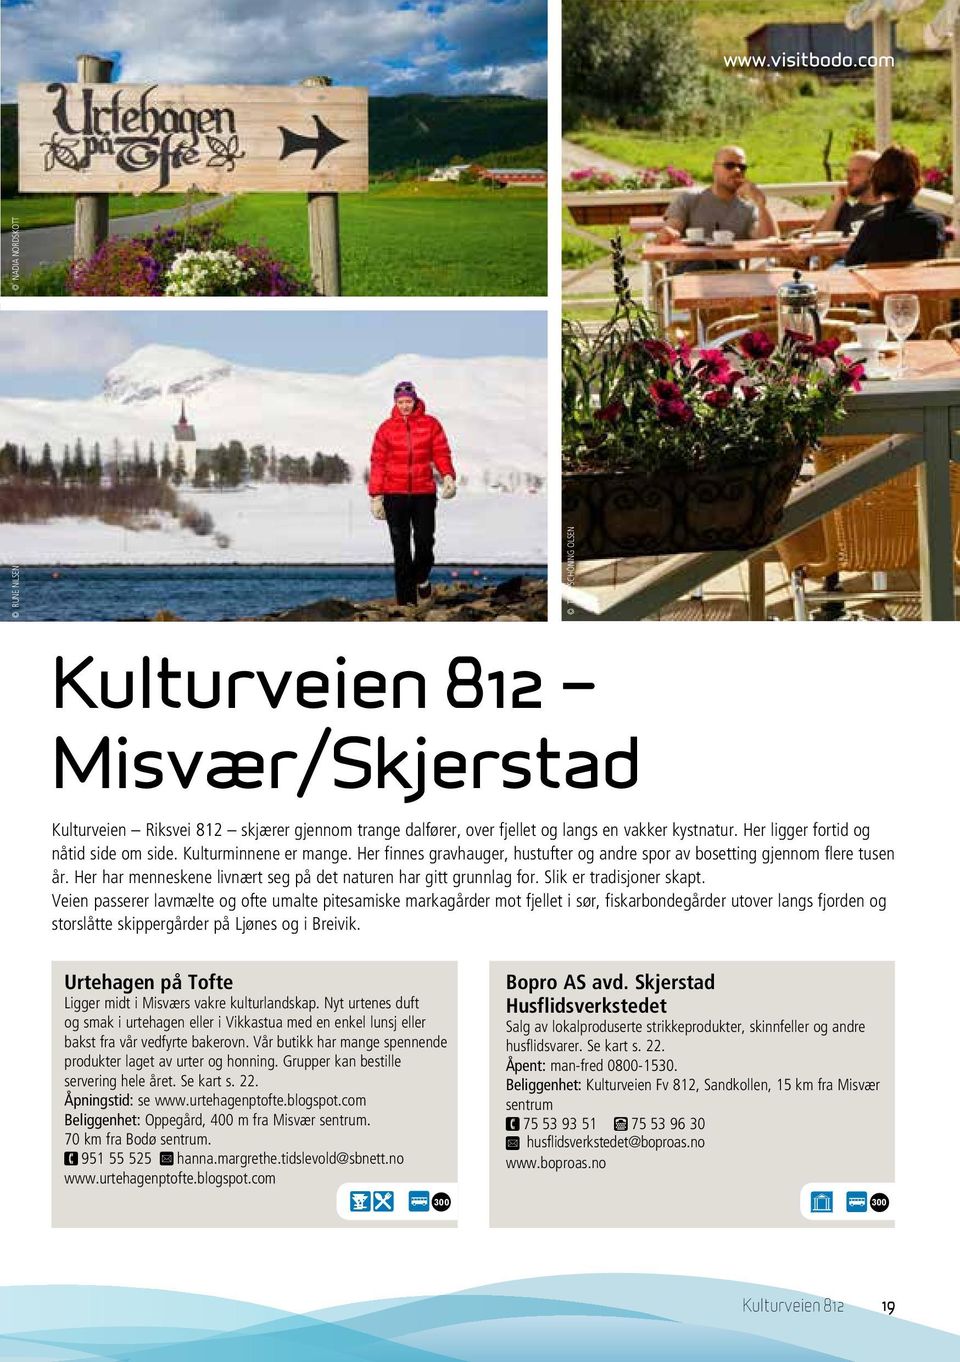 Slik er tradisjoer skapt. Veie passerer lavmælte og ofte umalte pitesamiske markagårder mot fjellet i sør, fiskarbodegårder utover lags fjorde og storslåtte skippergårder på Ljøes og i Breivik.